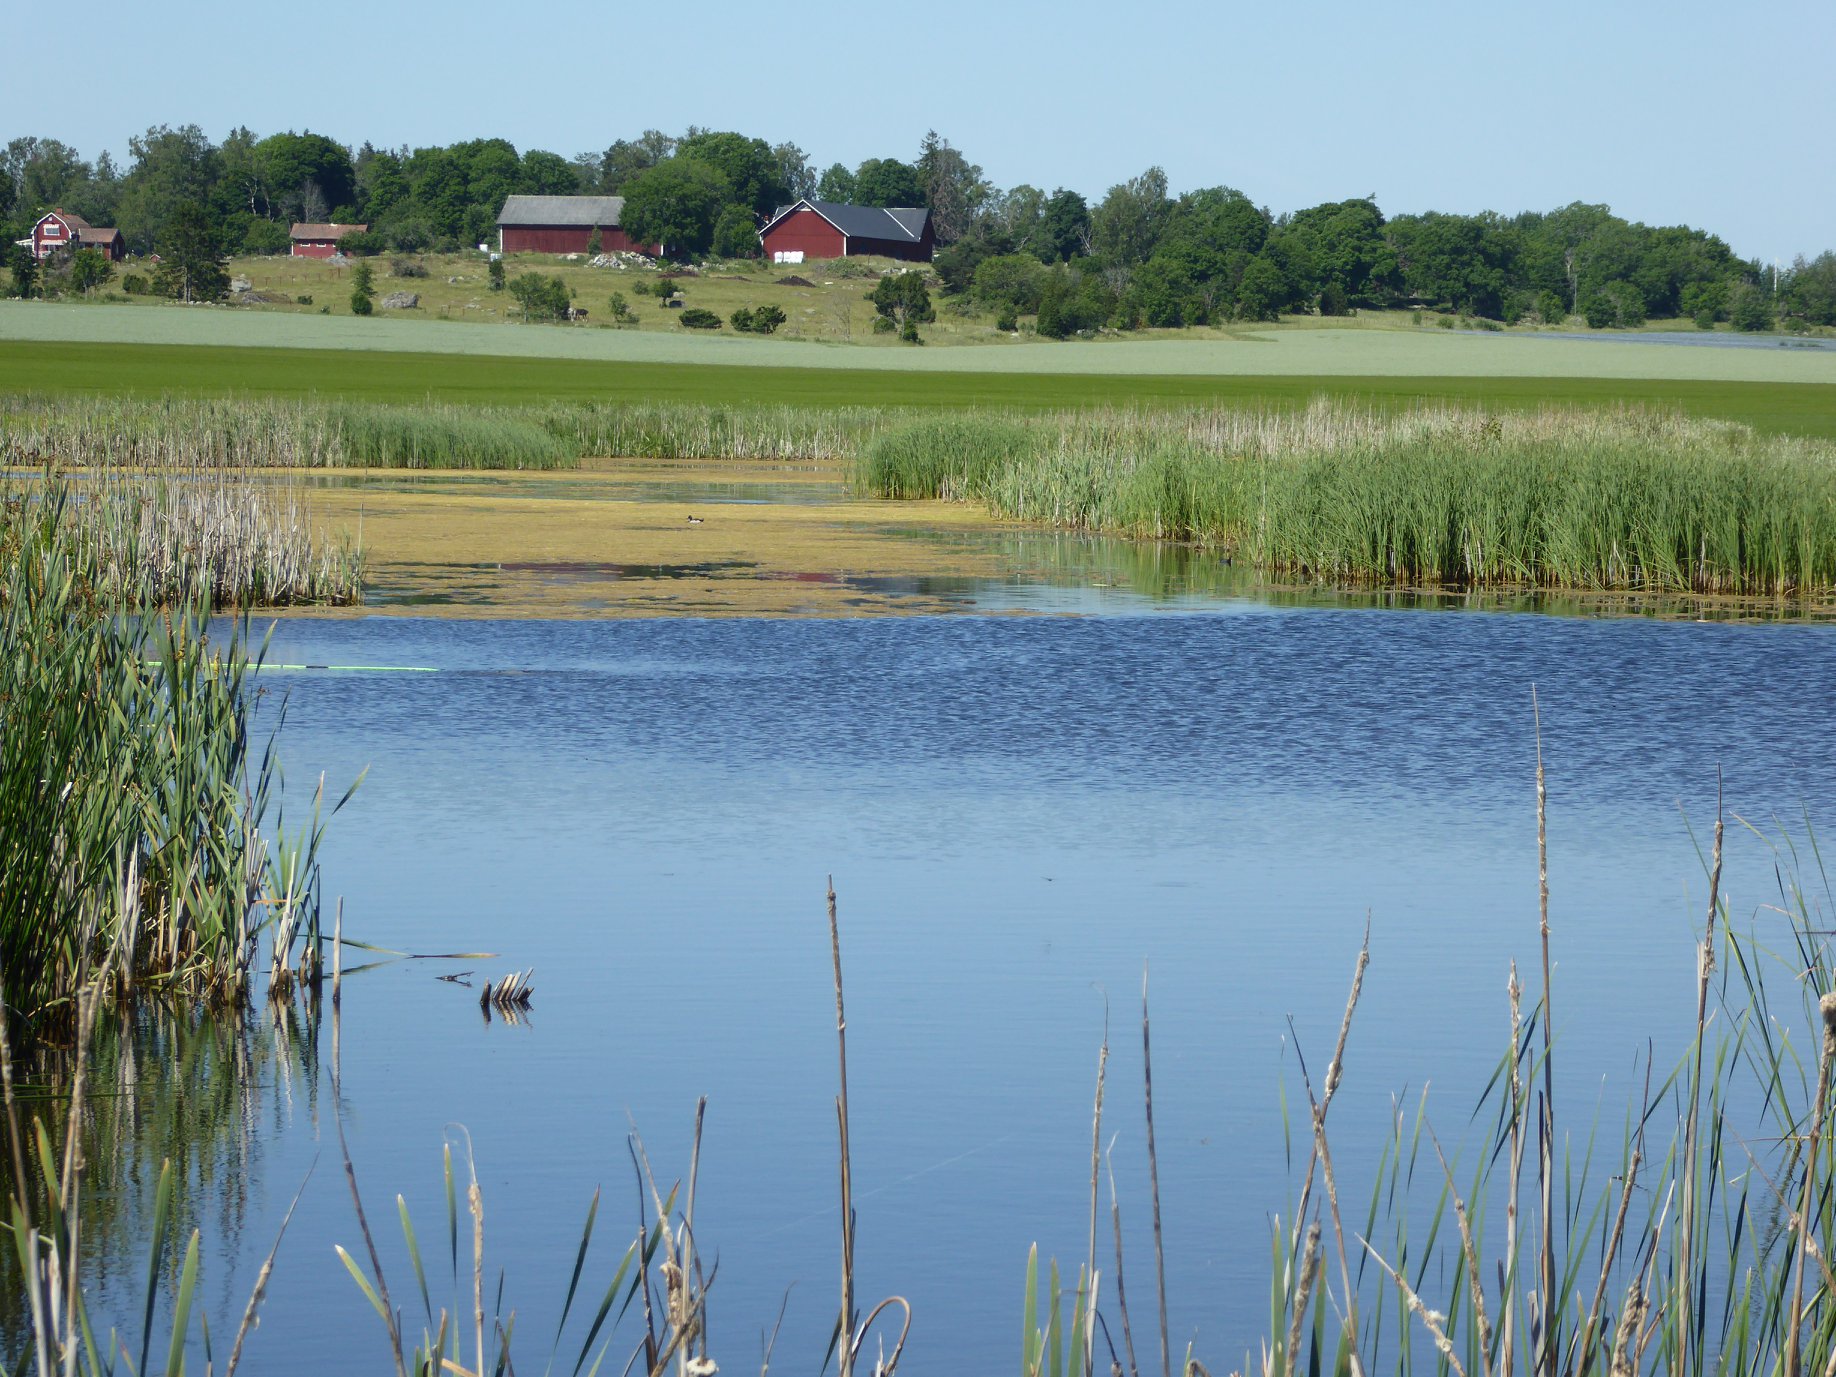 Ett svenskt sommarlandskap med en vacker våtmark får illustrera våtmarkers estetiska värden och rekreationsvärde. Foto av: Mike Peackock.